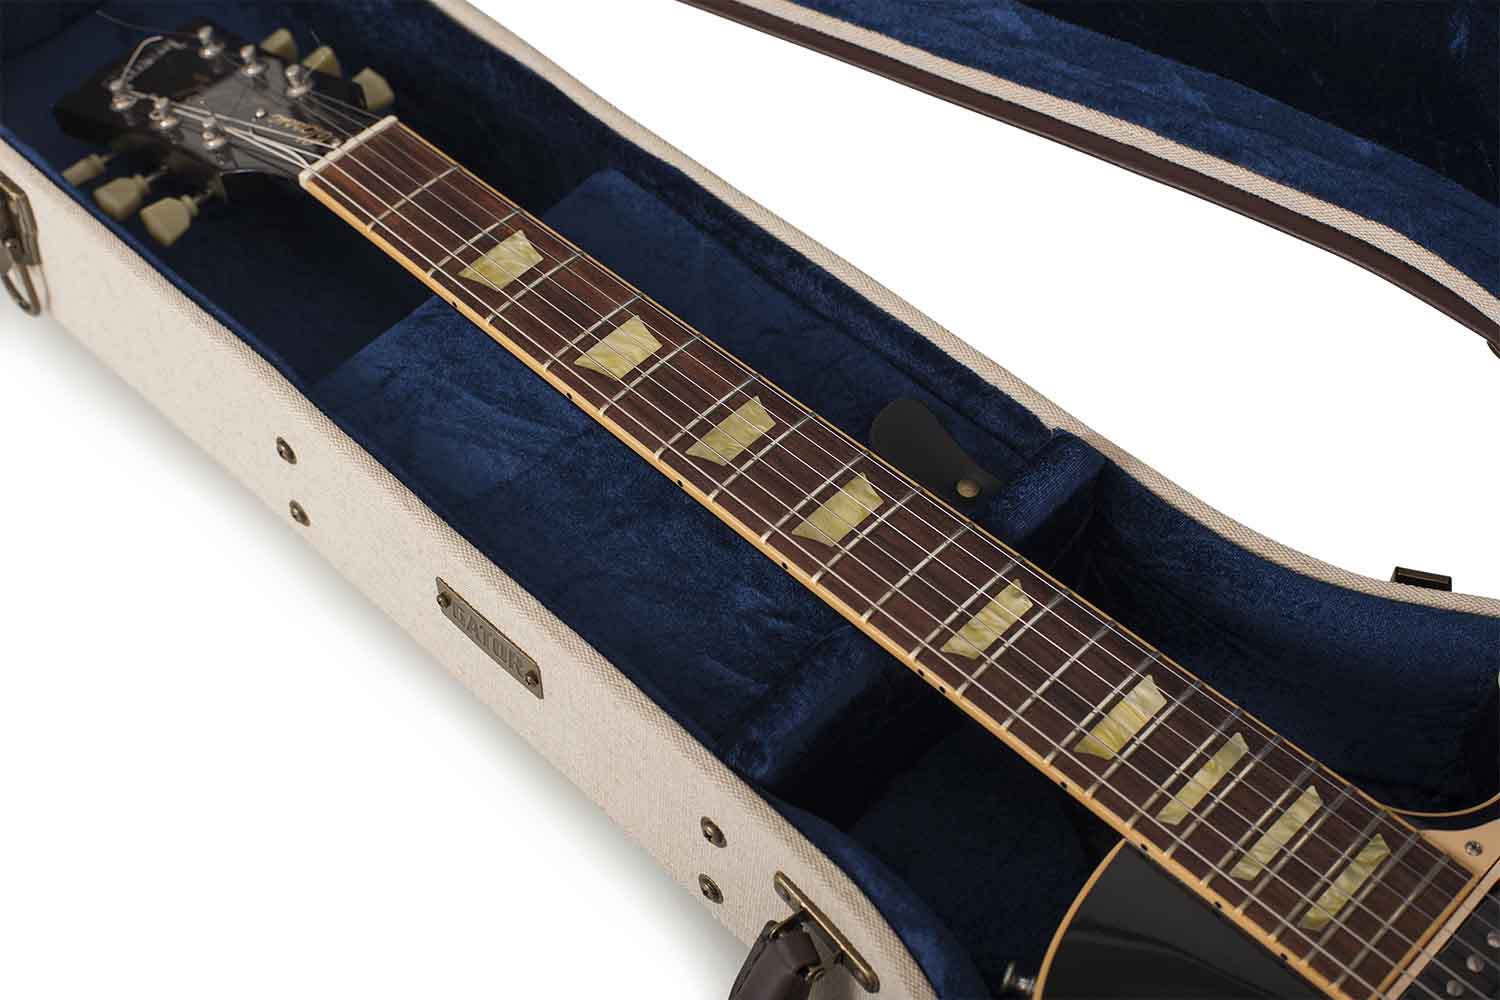 Gator Cases GW-JM LPS Deluxe Wood Case for Les Paul Style Guitars - Journeyman Burlap Exterior - Hollywood DJ